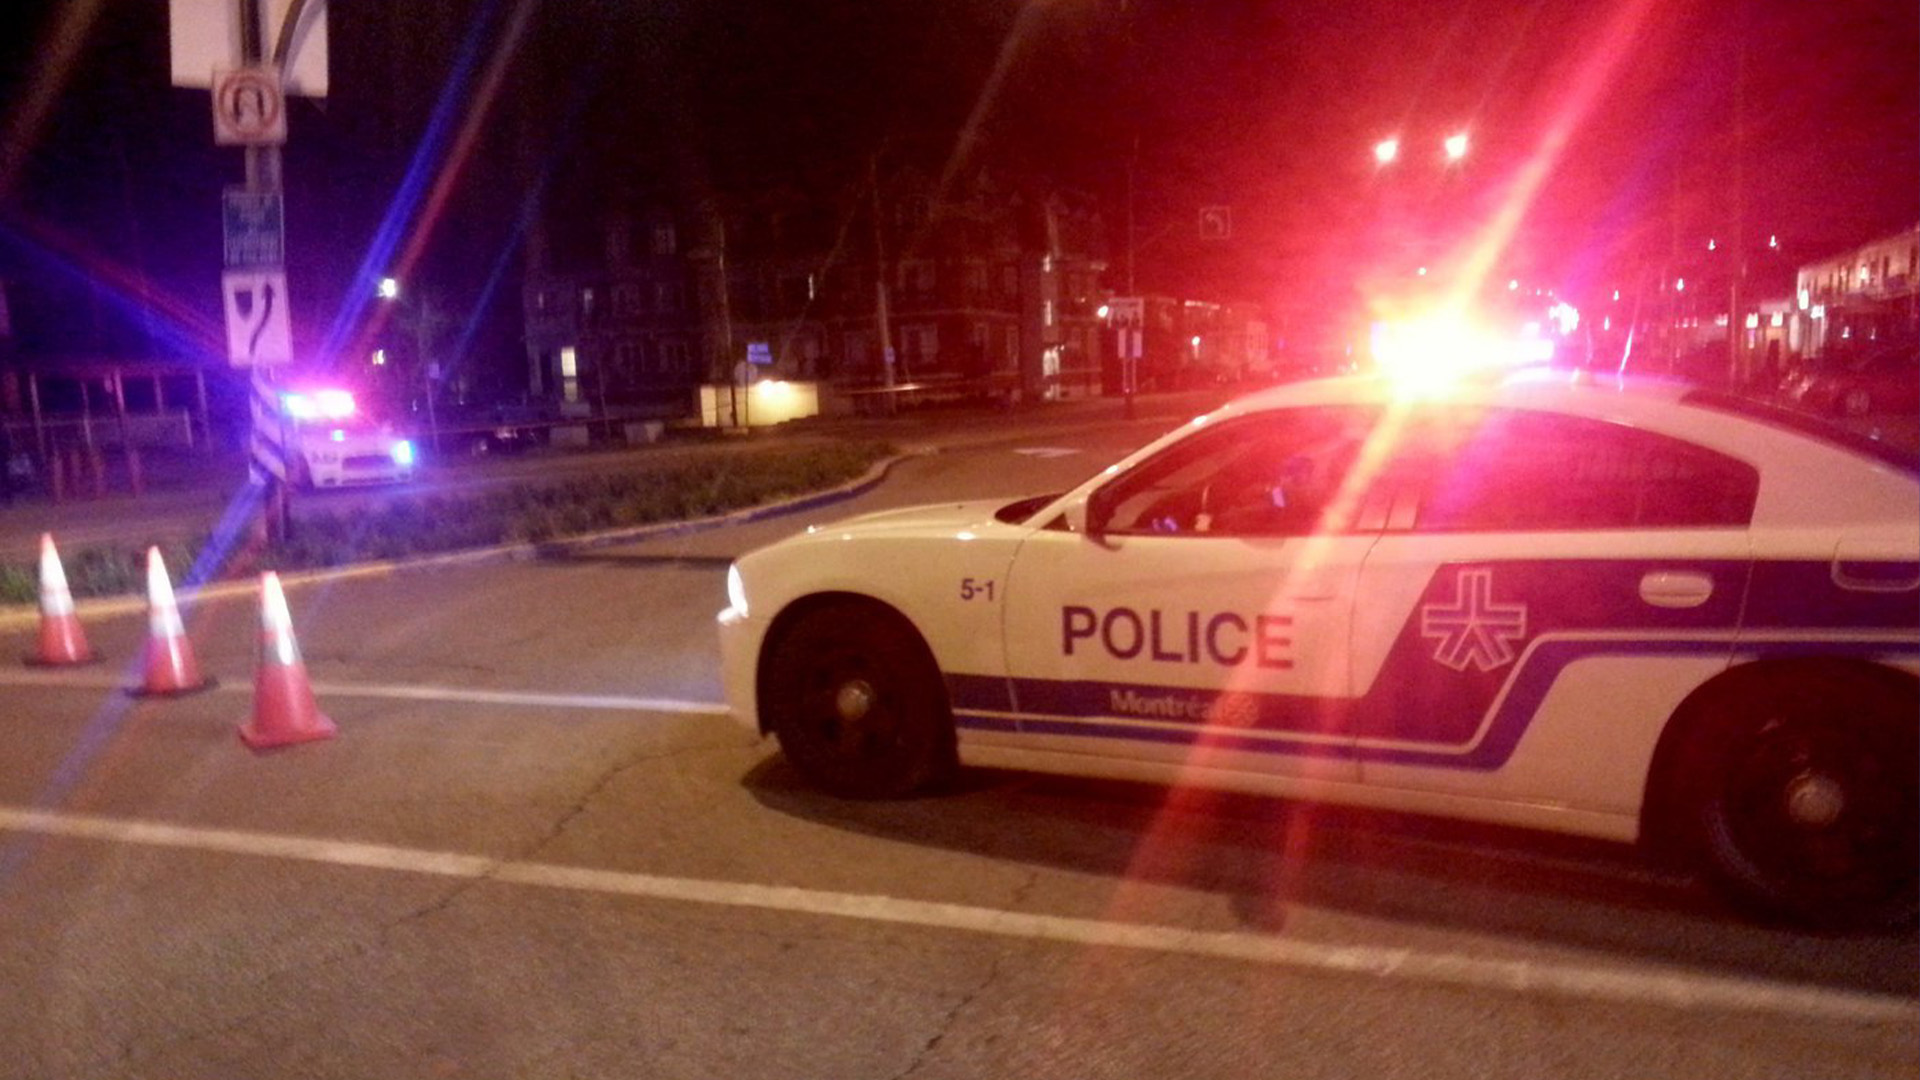 Des coups de feu ont été tirés jeudi soir dans une fenêtre d'une résidence du quartier Parc-Extension, à Montréal, mais le Service de police de la Ville de Montréal (SPVM) ne signale aucun blessé.